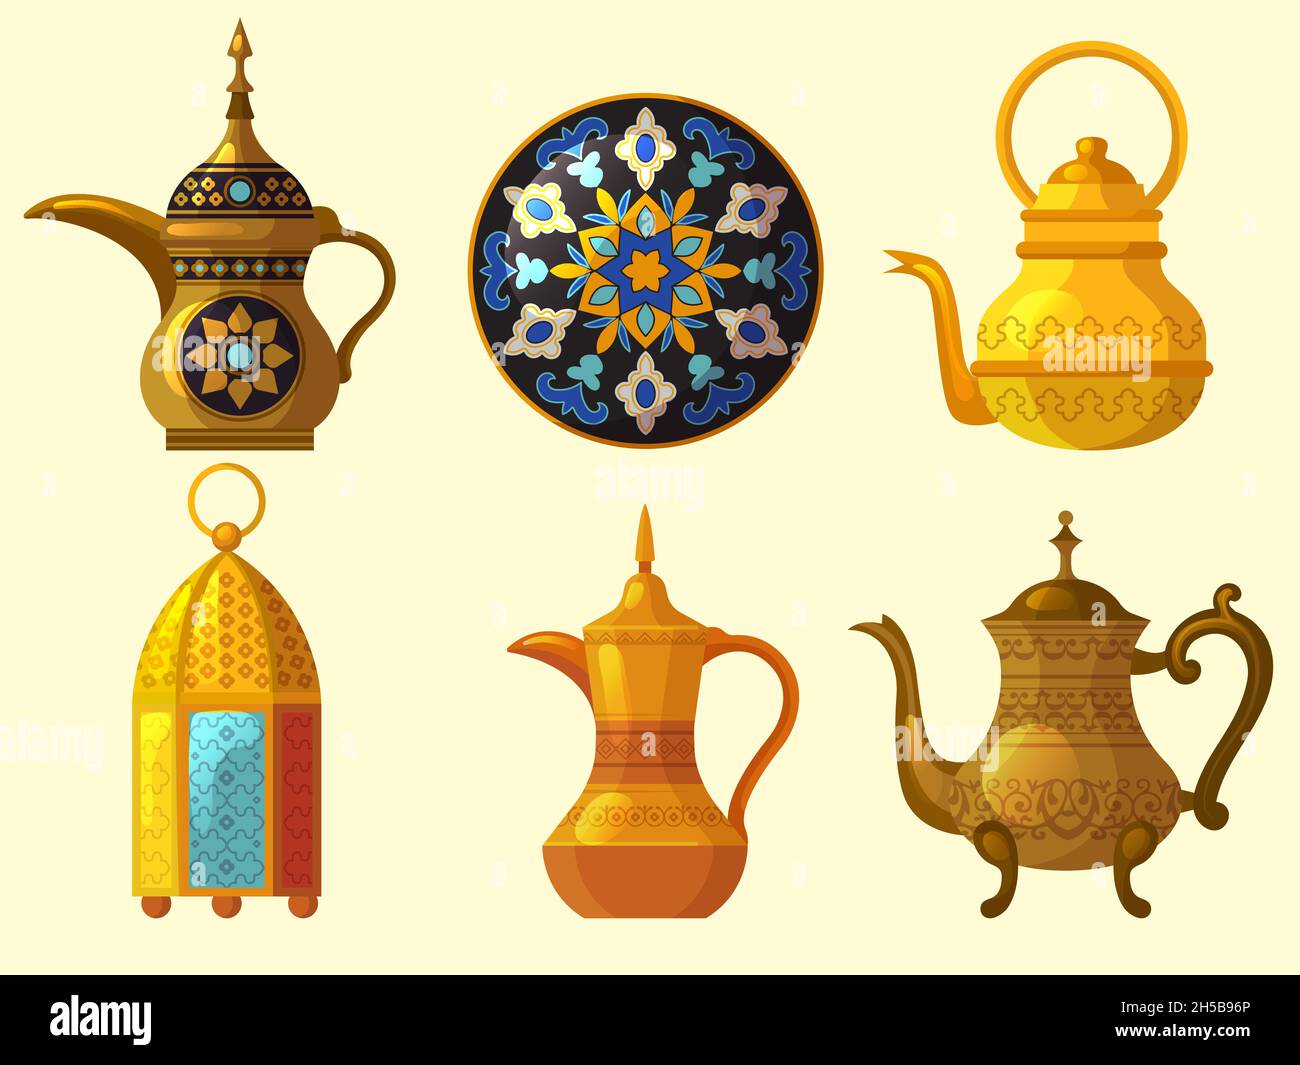 Patrimonio árabe. Arte cultural oriental objetos tradicionales diversos cerámica árabe emiratos decoración colección de vectores Ilustración del Vector